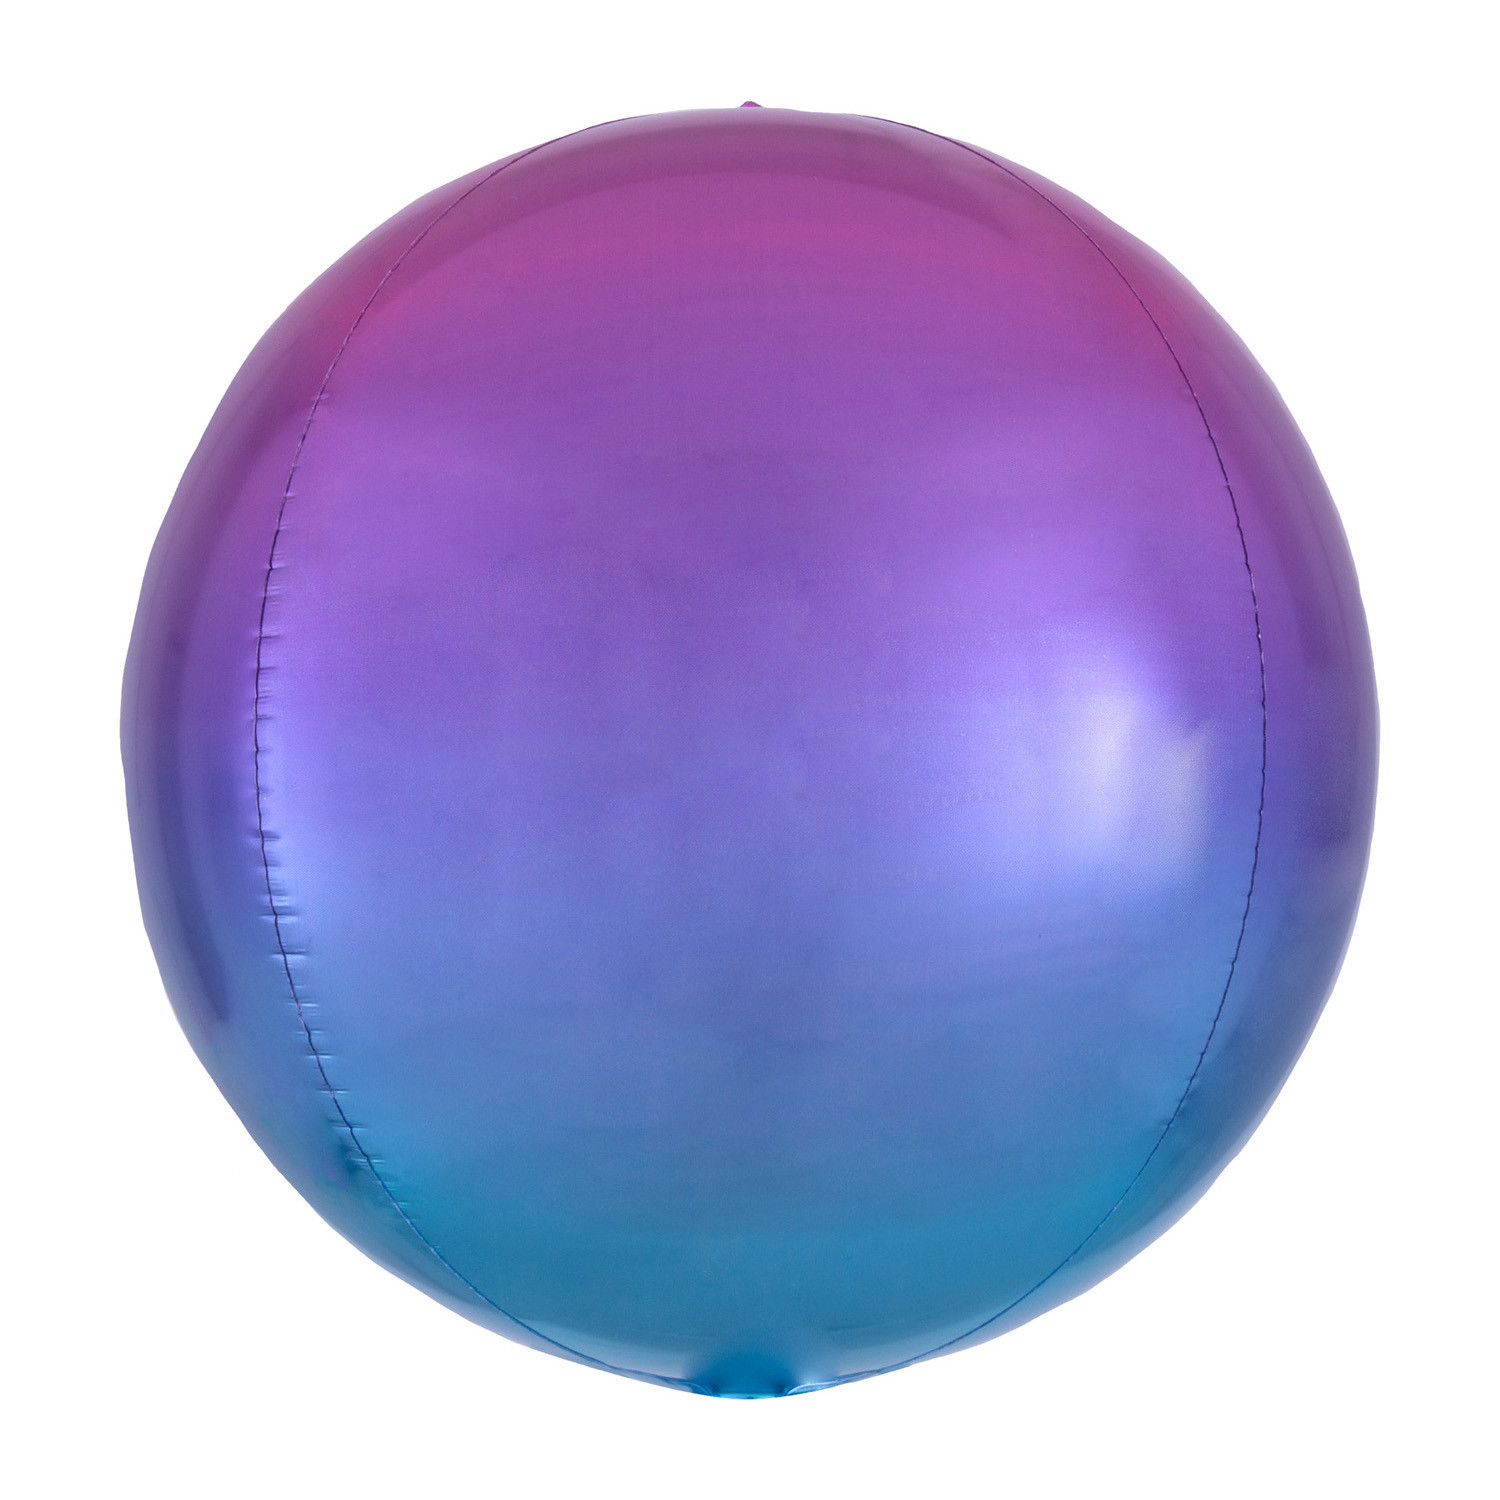 Balon foliowy Orbz - Kula ombre fioletowo-niebieska / 38x40 cm